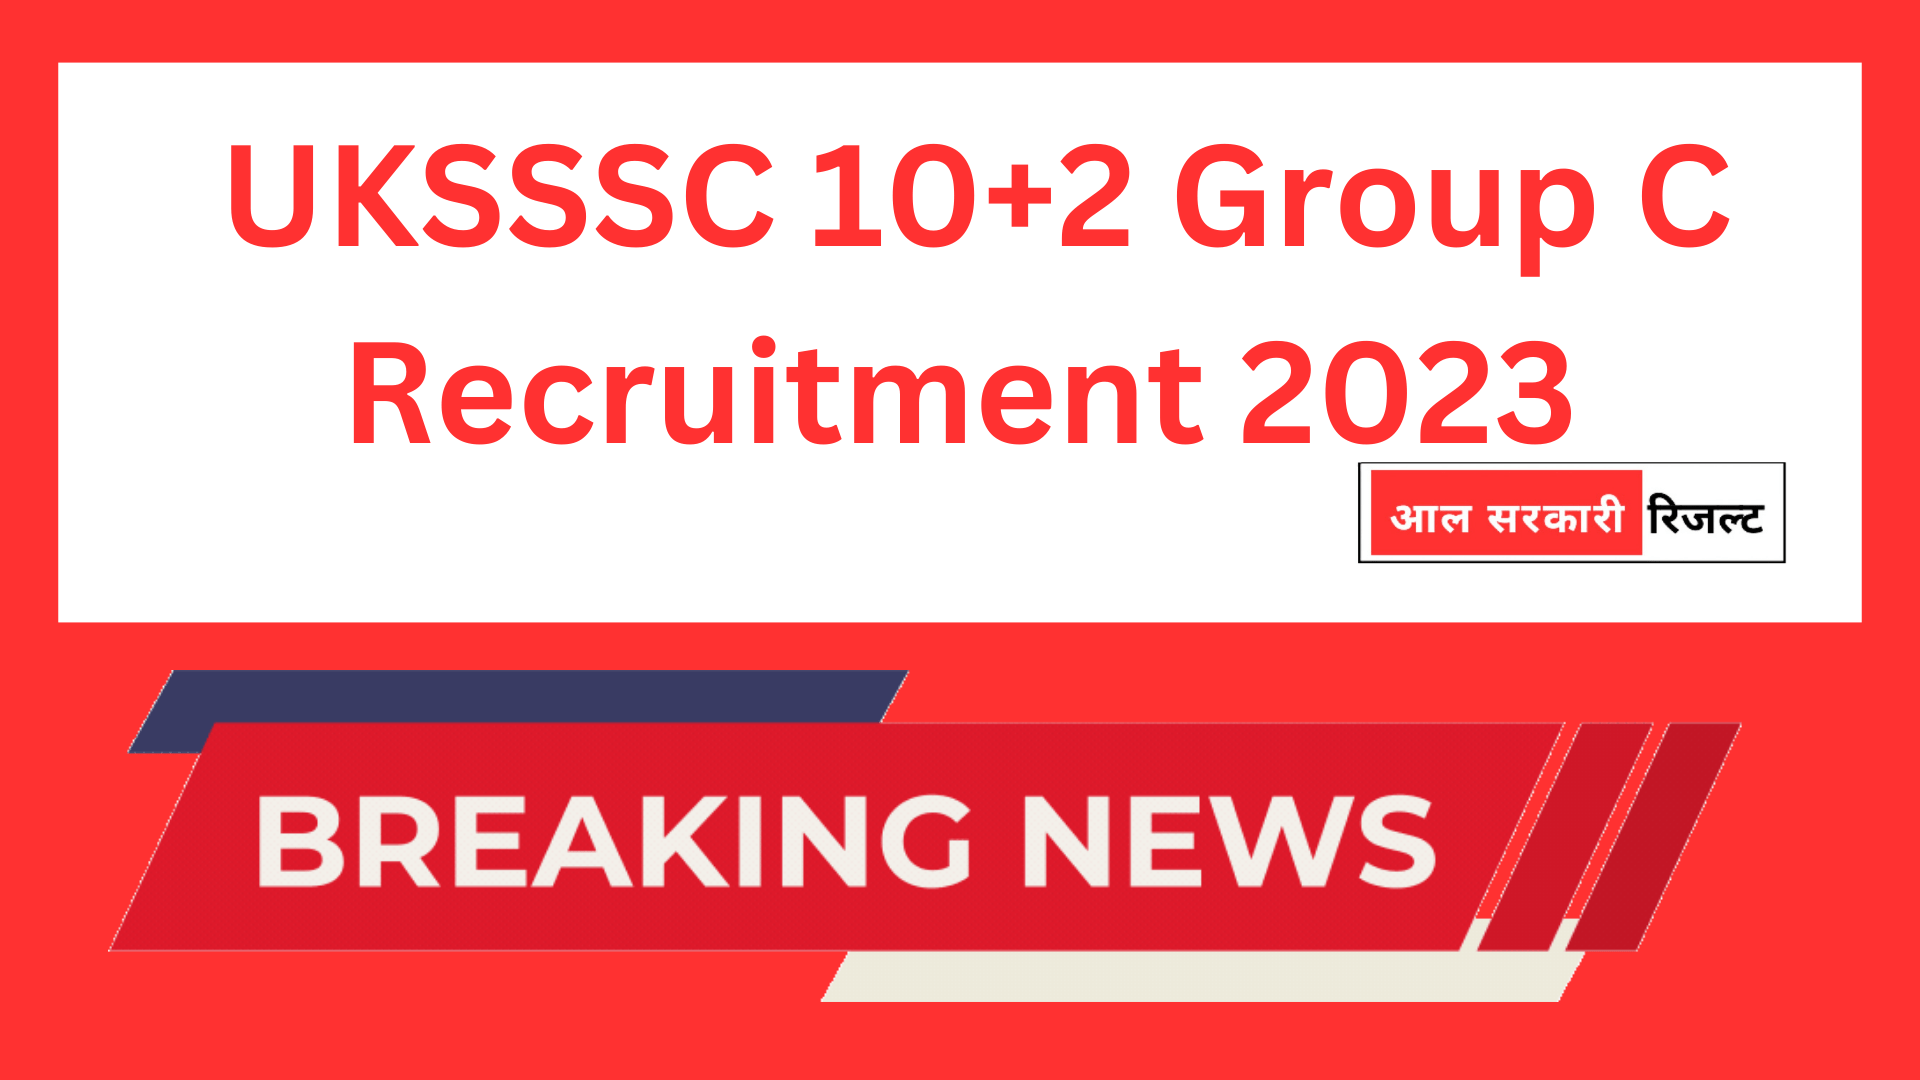 UKSSSC 10+2 Group C Recruitment 2023